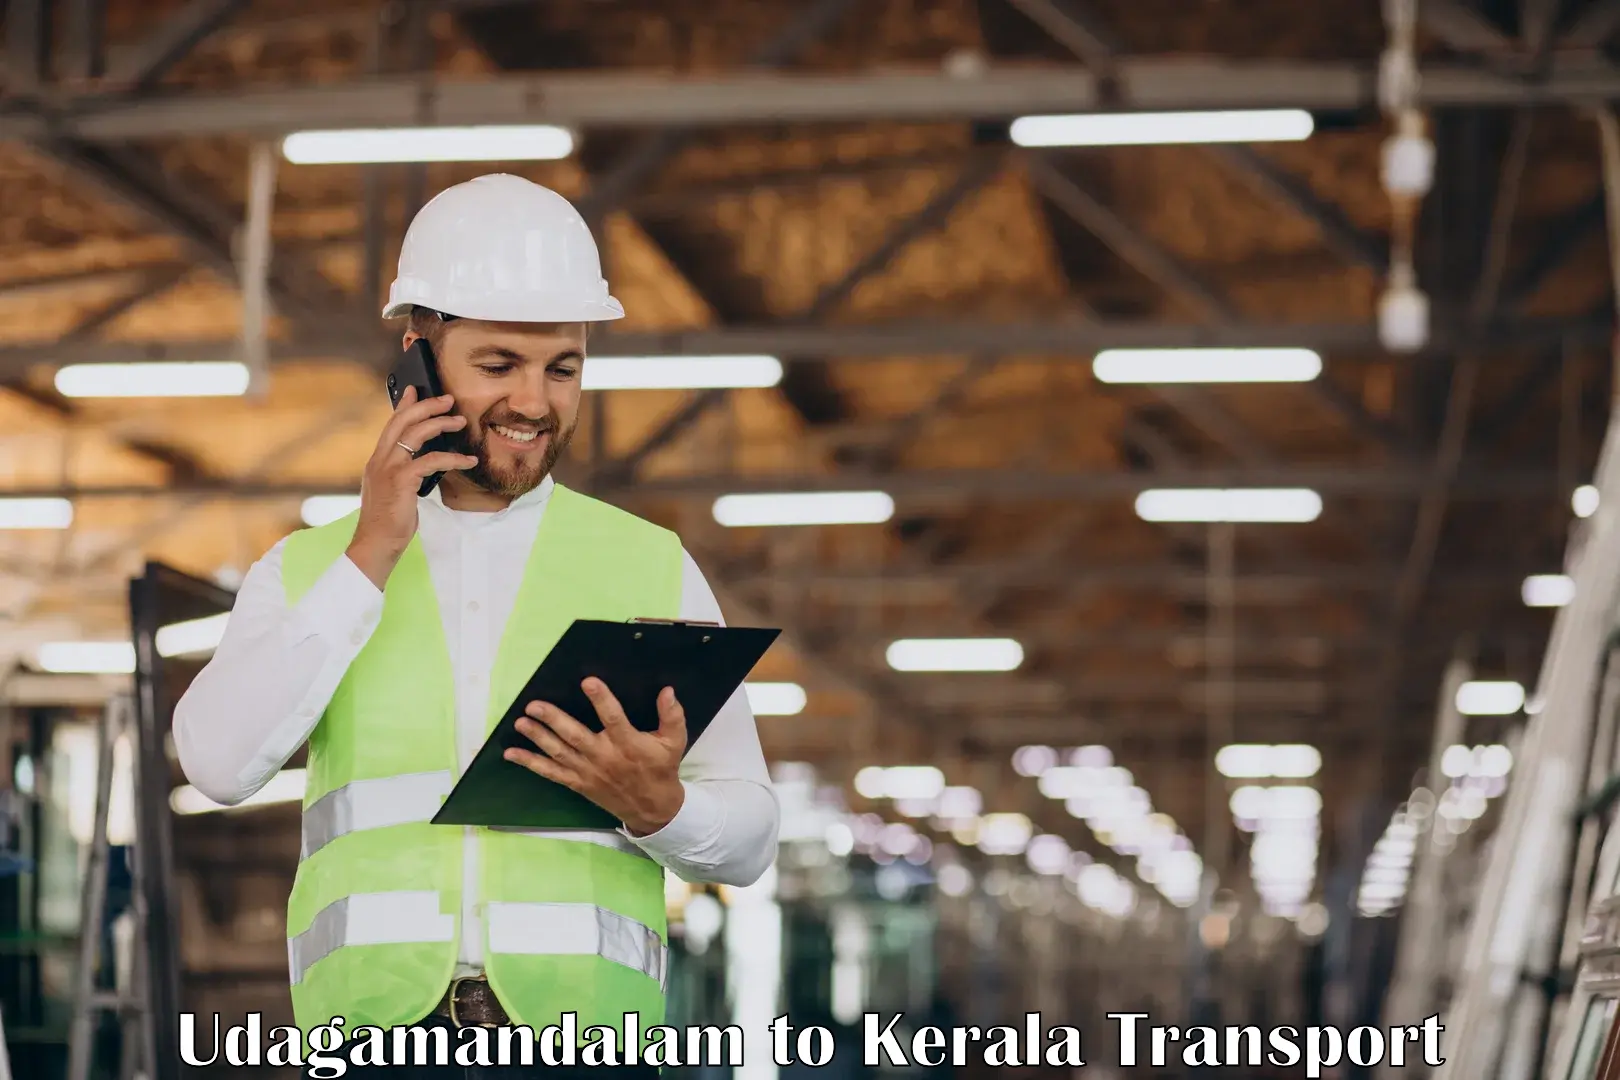 Intercity transport Udagamandalam to IIIT Kottayam